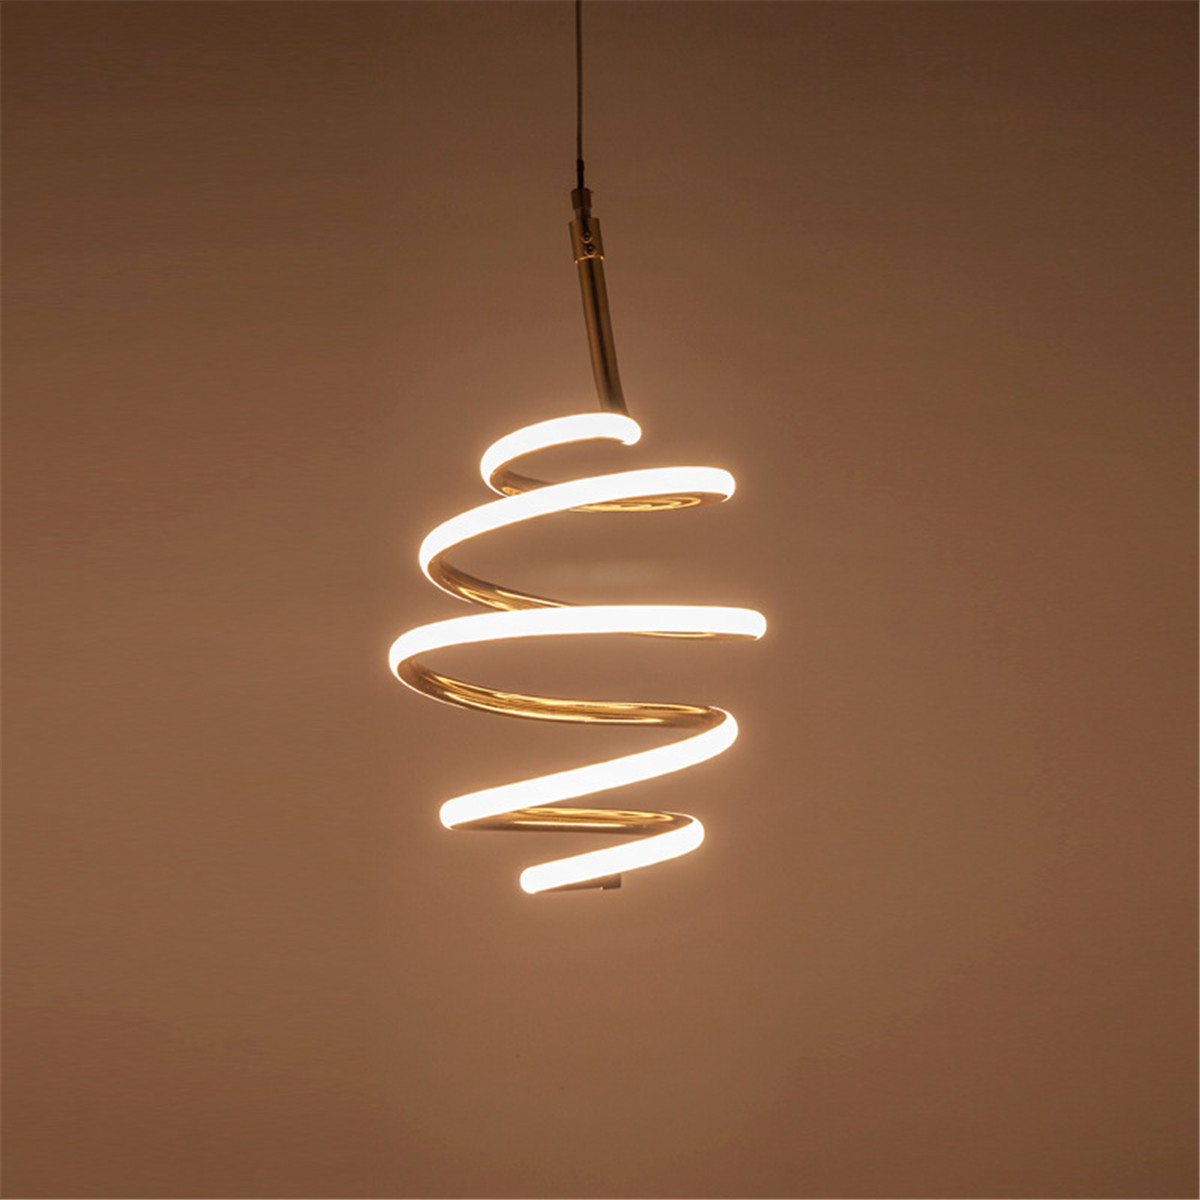 Remote-Control-LED-Pendant-Lights-Lamp-Modern-Chandelier-Home-Bedroom-Lighting-1675000-3